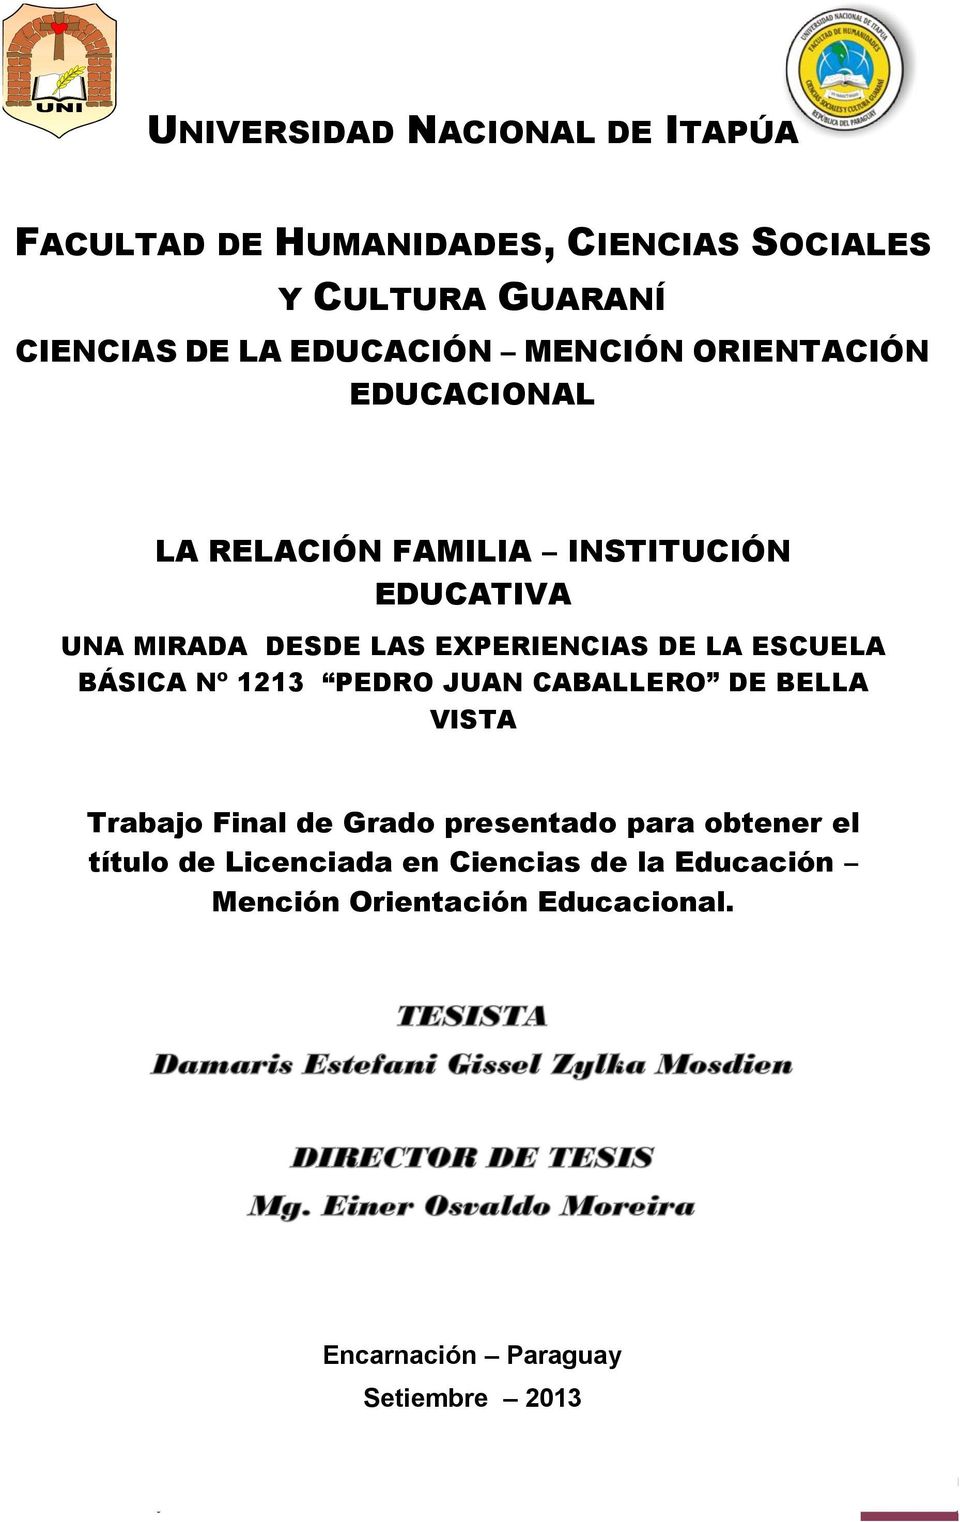 ESCUELA BÁSICA Nº 1213 PEDRO JUAN CABALLERO DE BELLA VISTA Trabajo Final de Grado presentado para obtener el título de